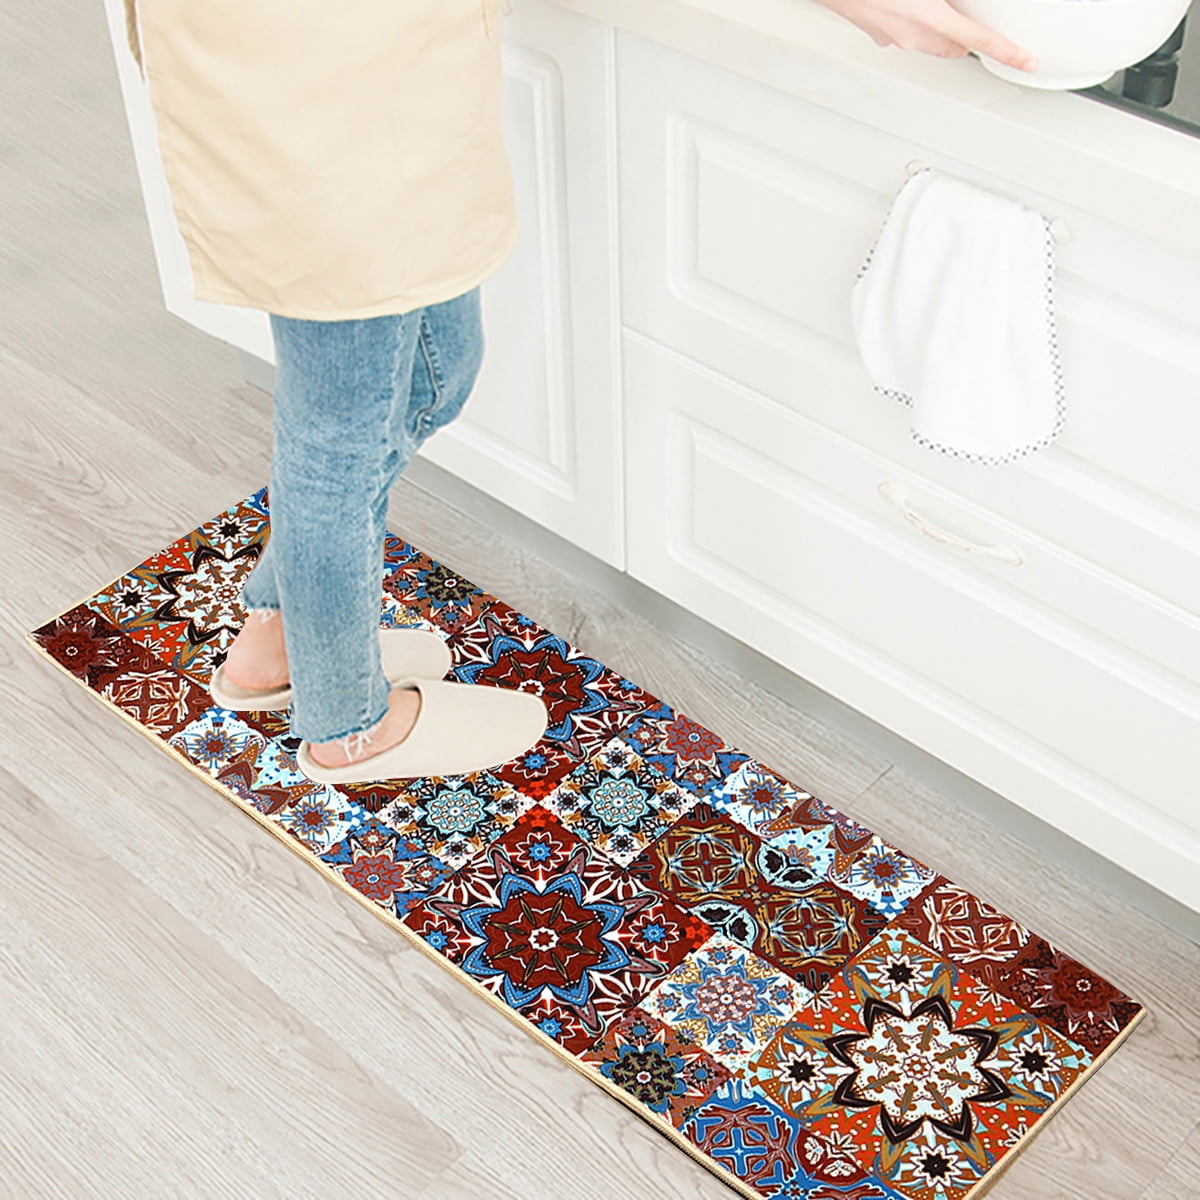 Non-slip Kitchen Floor Mats Doormat Bathroom Carpet Runner Area Rug Home Decor